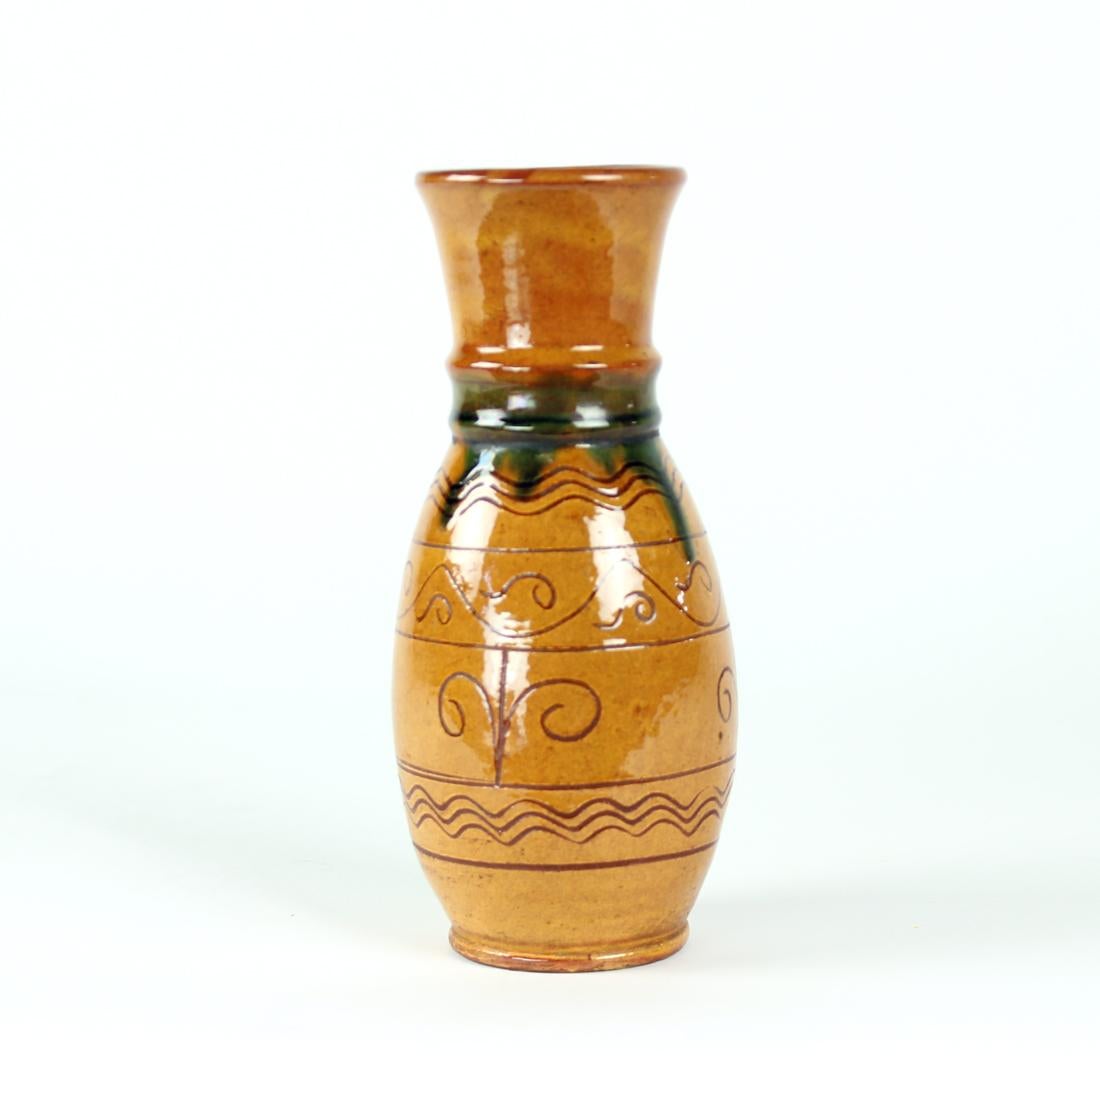 Schöne Vintage-Vase aus Keramik mit glasierter Oberfläche. Interessantes Design und Farbkombination. Die Vase ist in einem braunen Farbton mit einer blauen Details auf dem Hals der Vase. Auch auf der Keramik selbst befinden sich volkskünstlerische